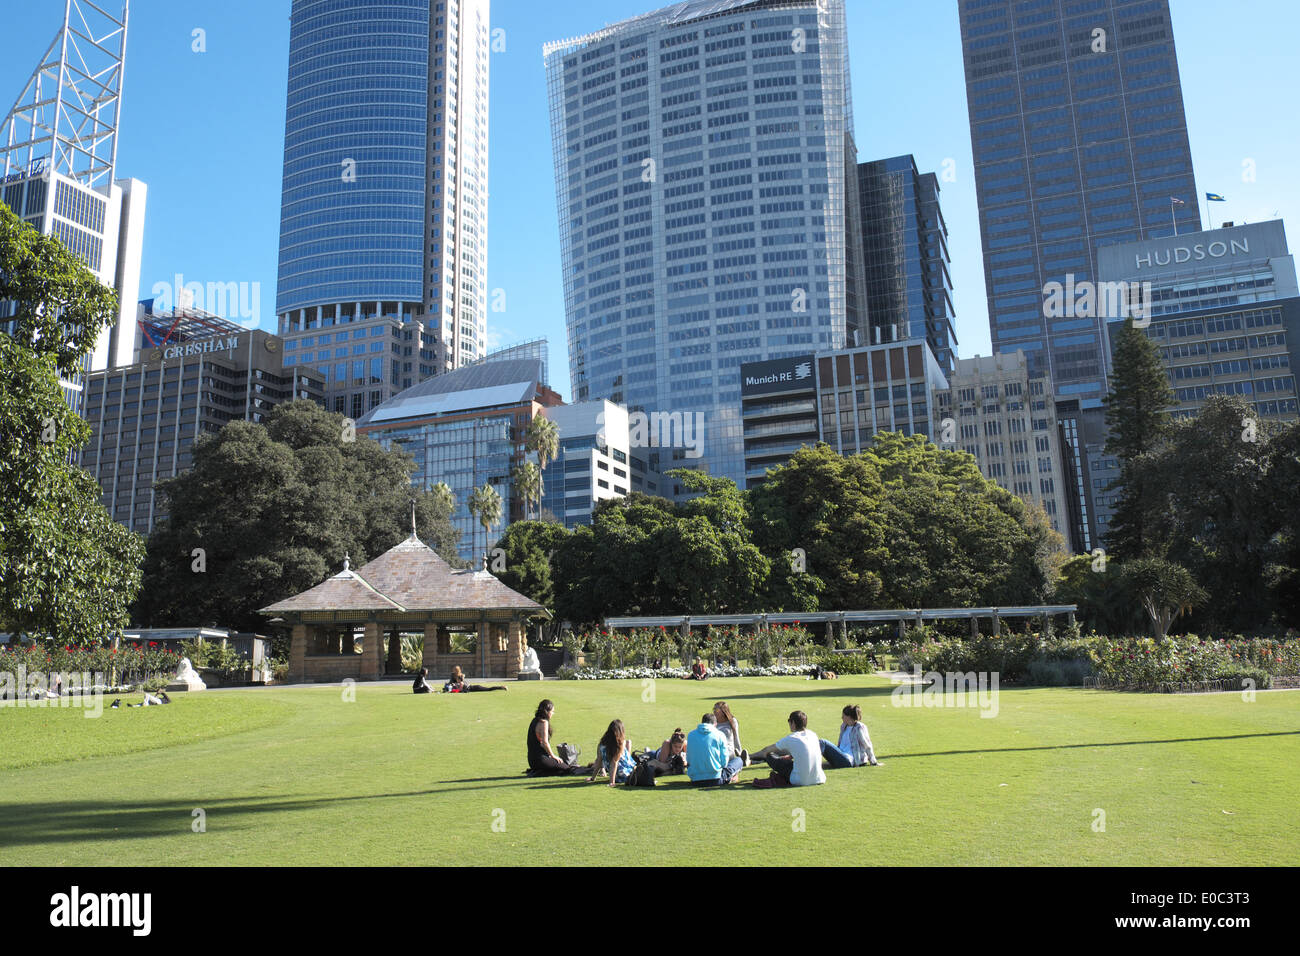 Royal Botanic Gardens dans le centre-ville de Sydney, en Australie, avec le quartier central des affaires dans l'arrière-plan Banque D'Images